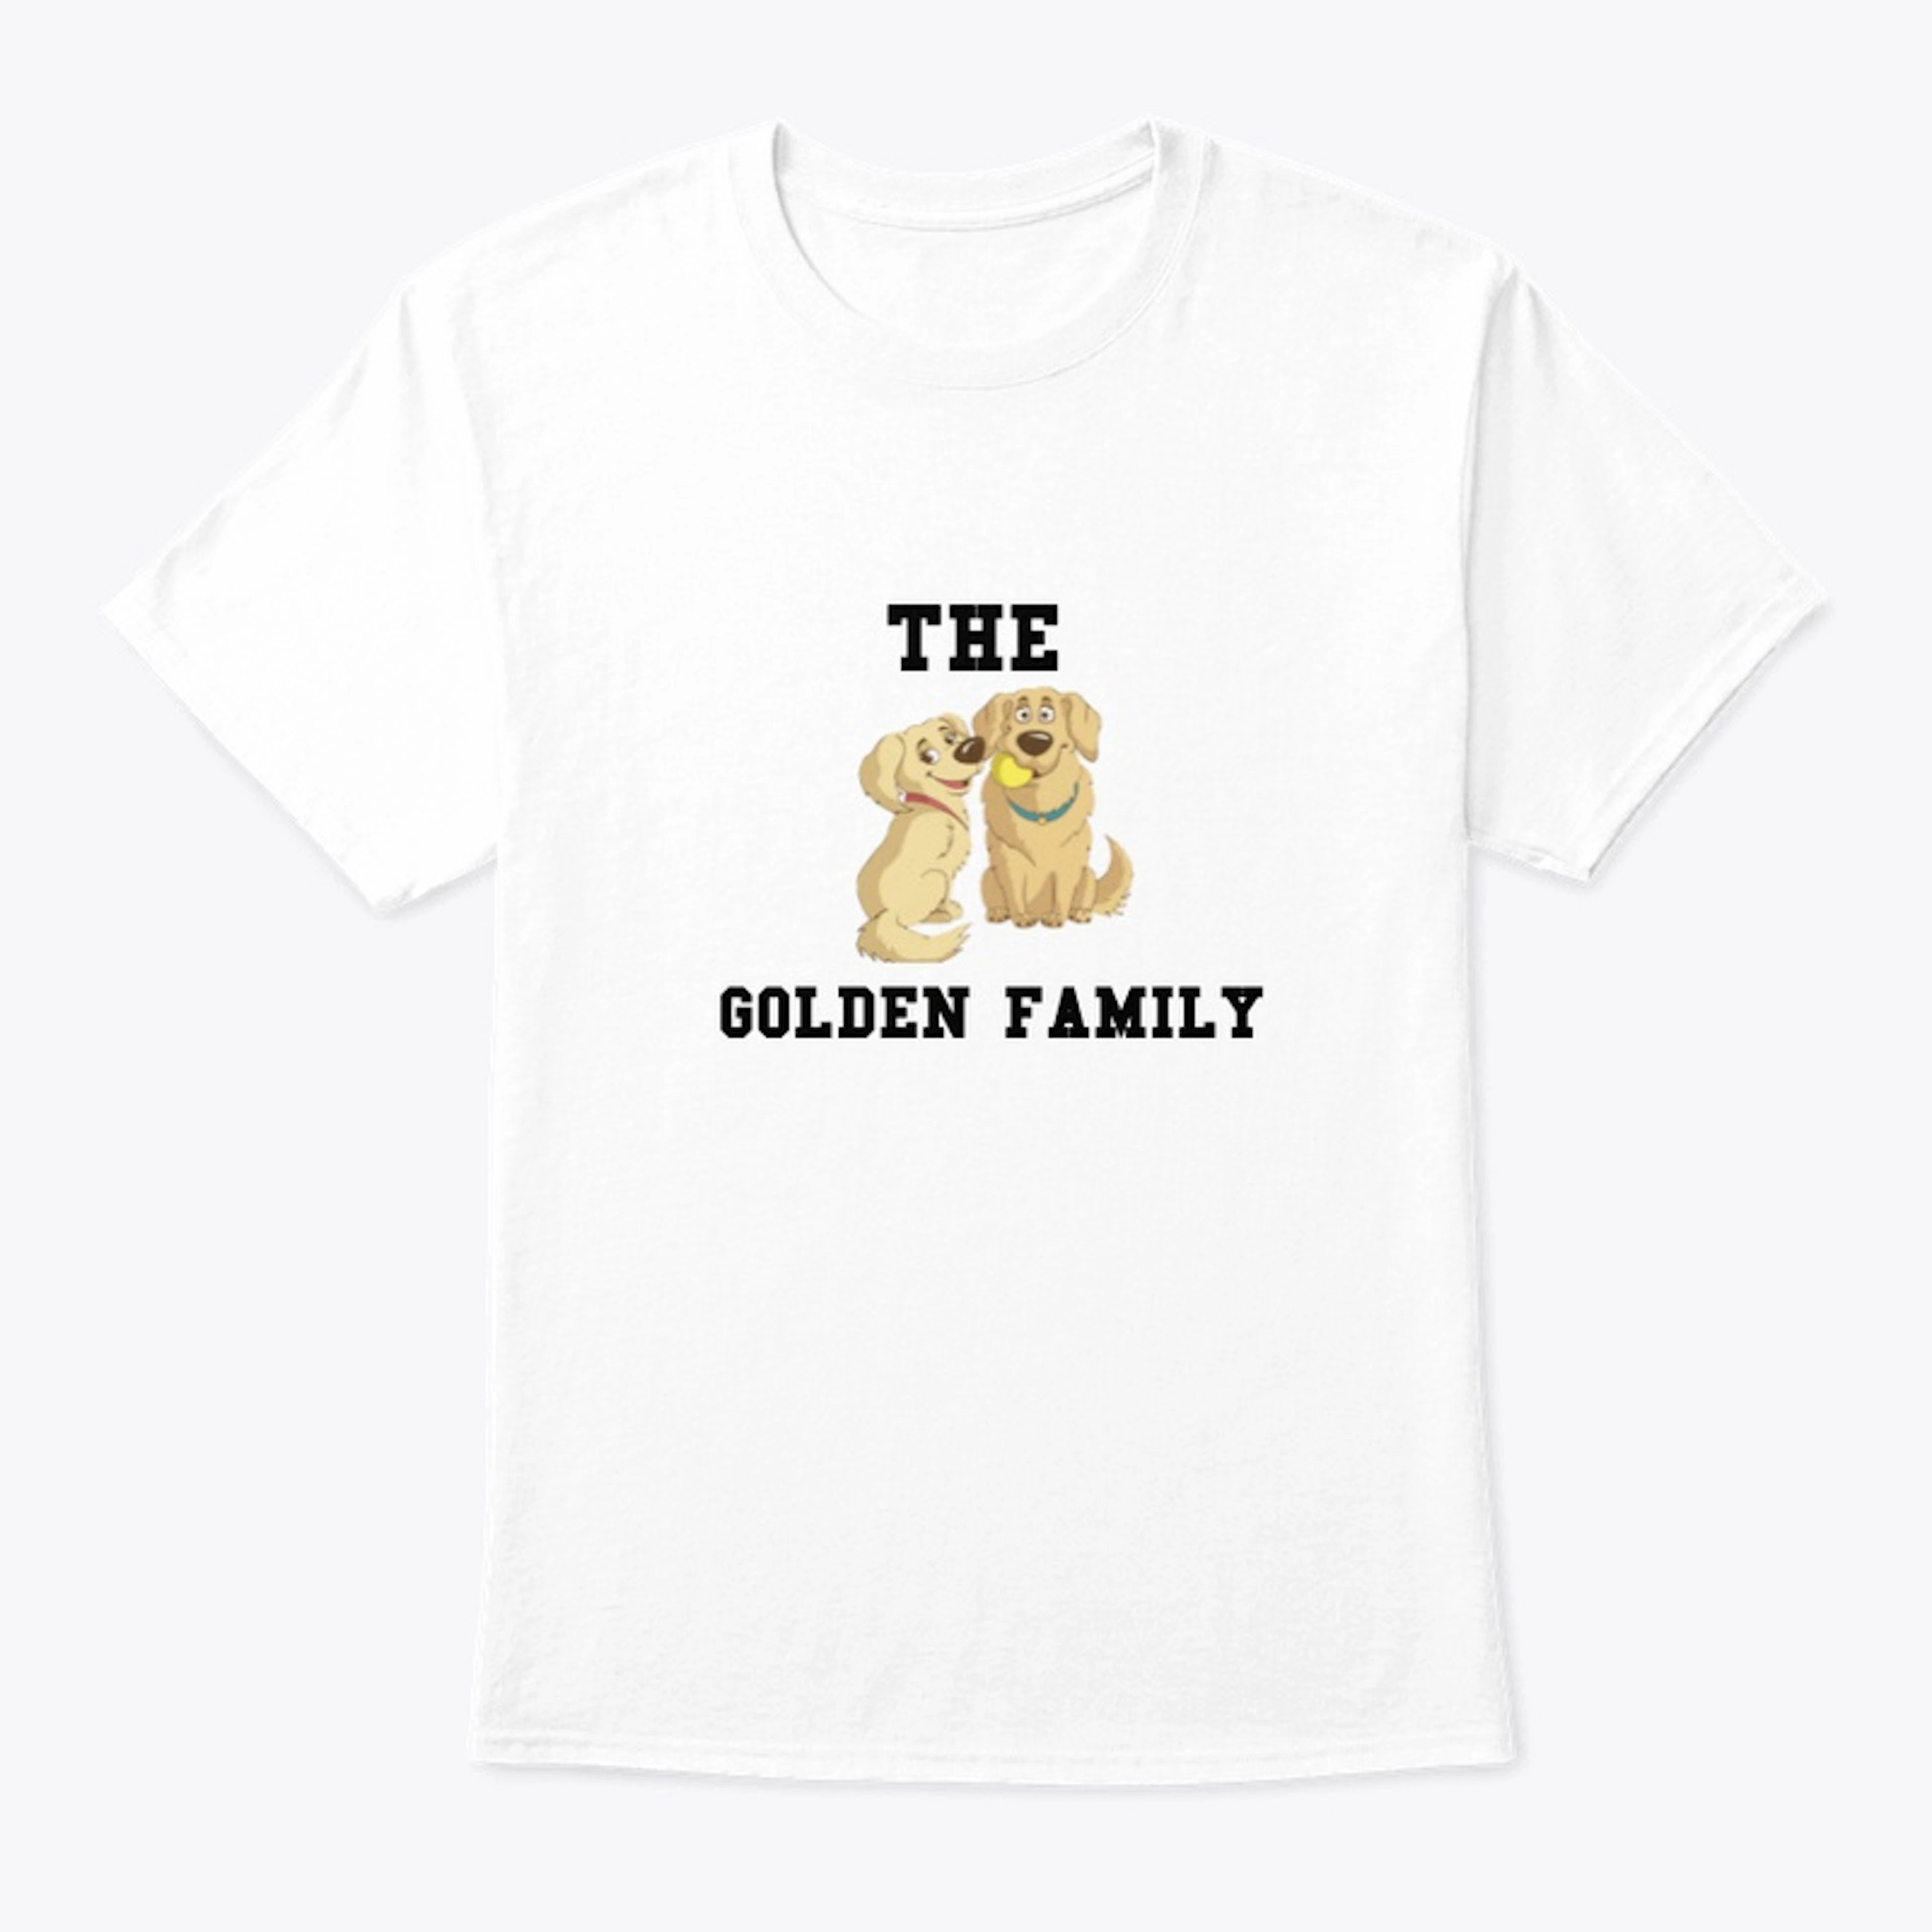 GOLDEN FAMILY